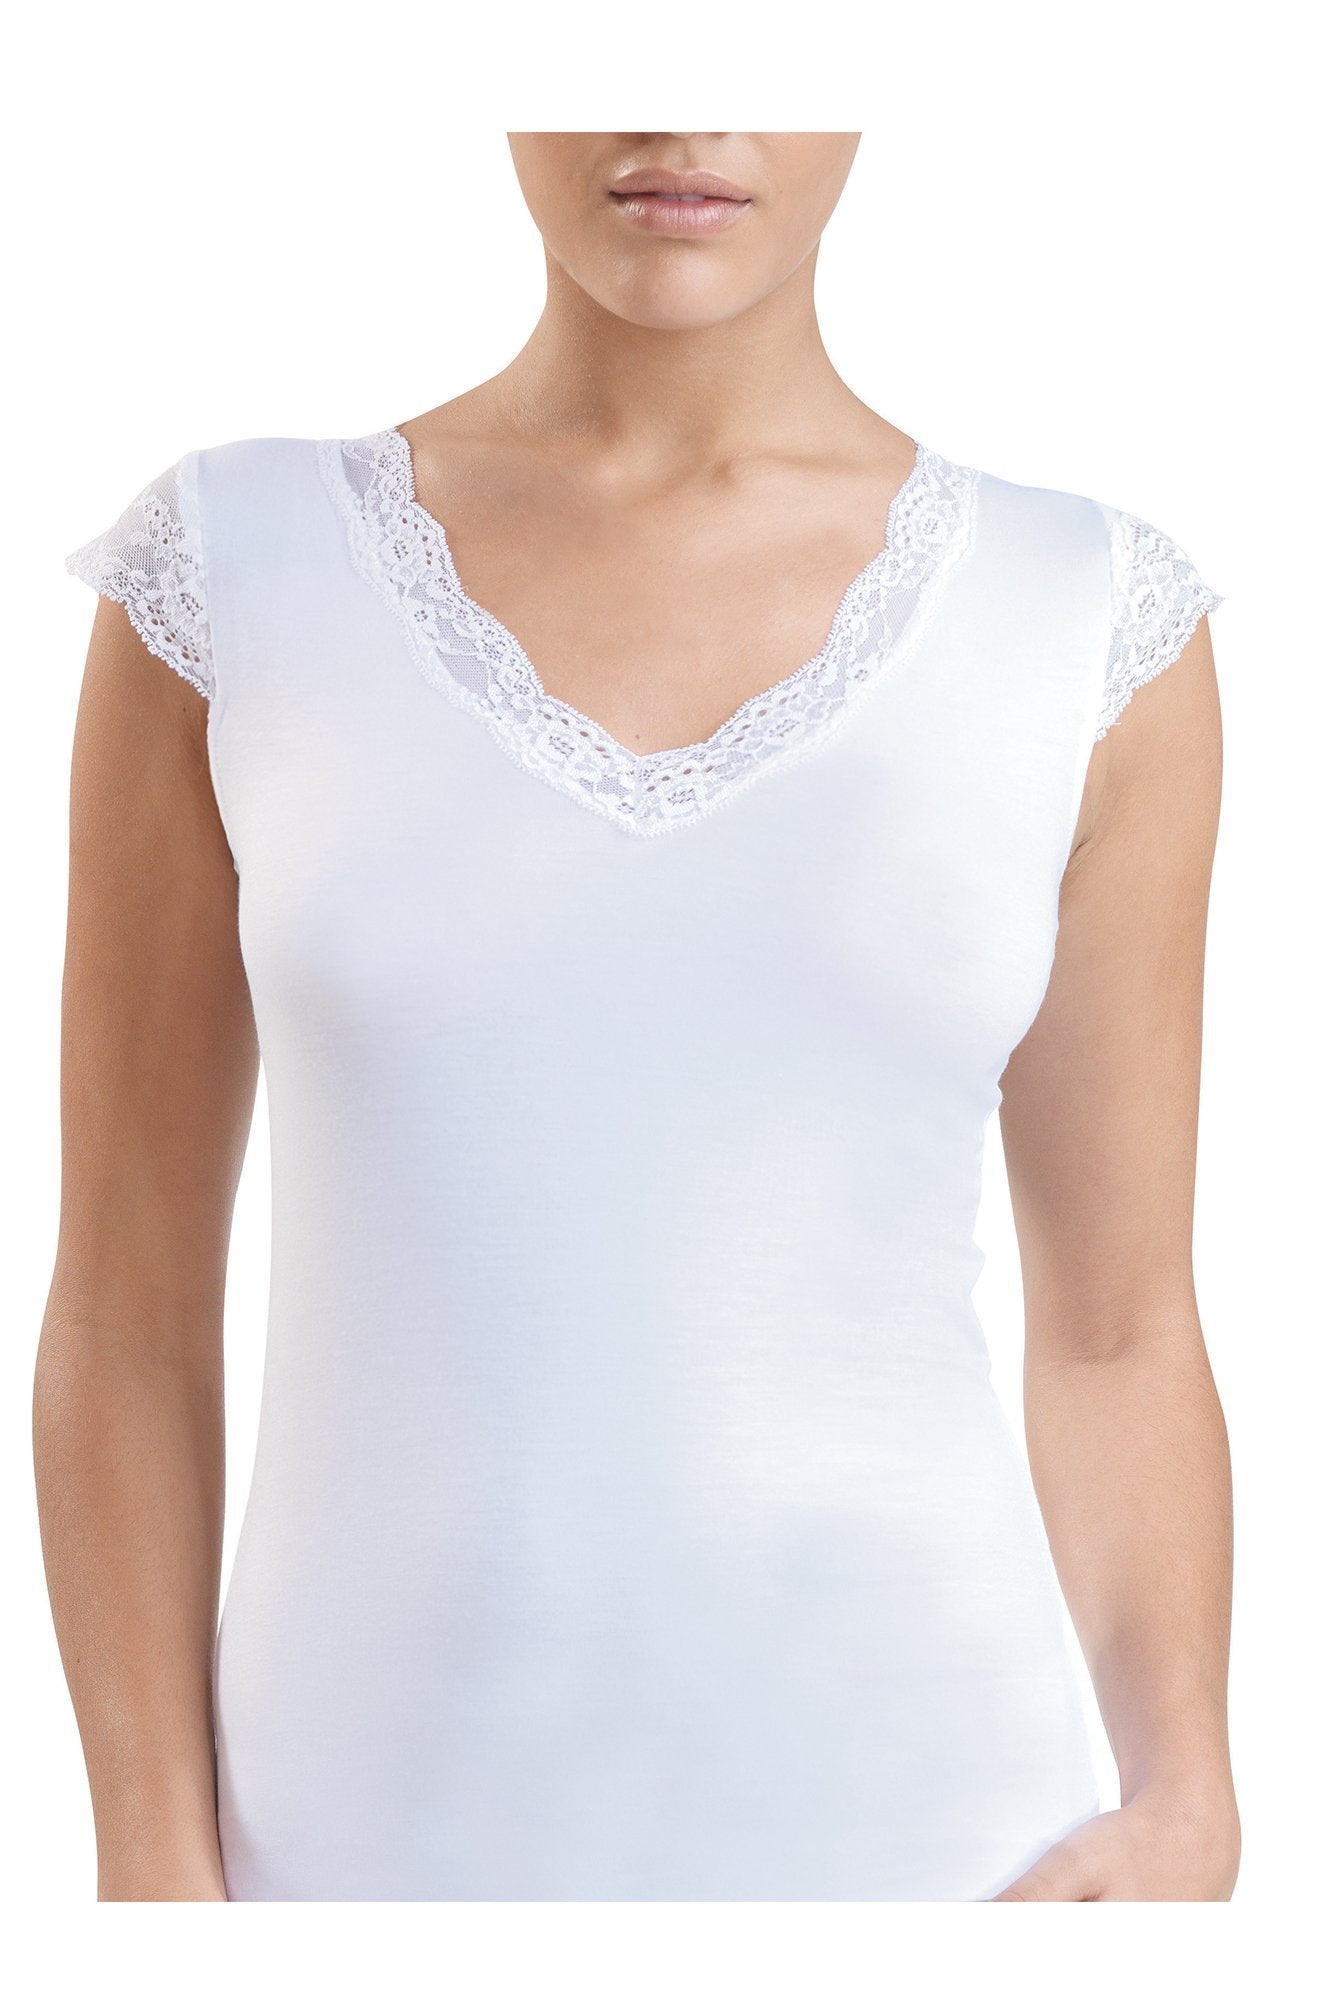 Ladies' T-Shirt-1348 underwear blackspade 